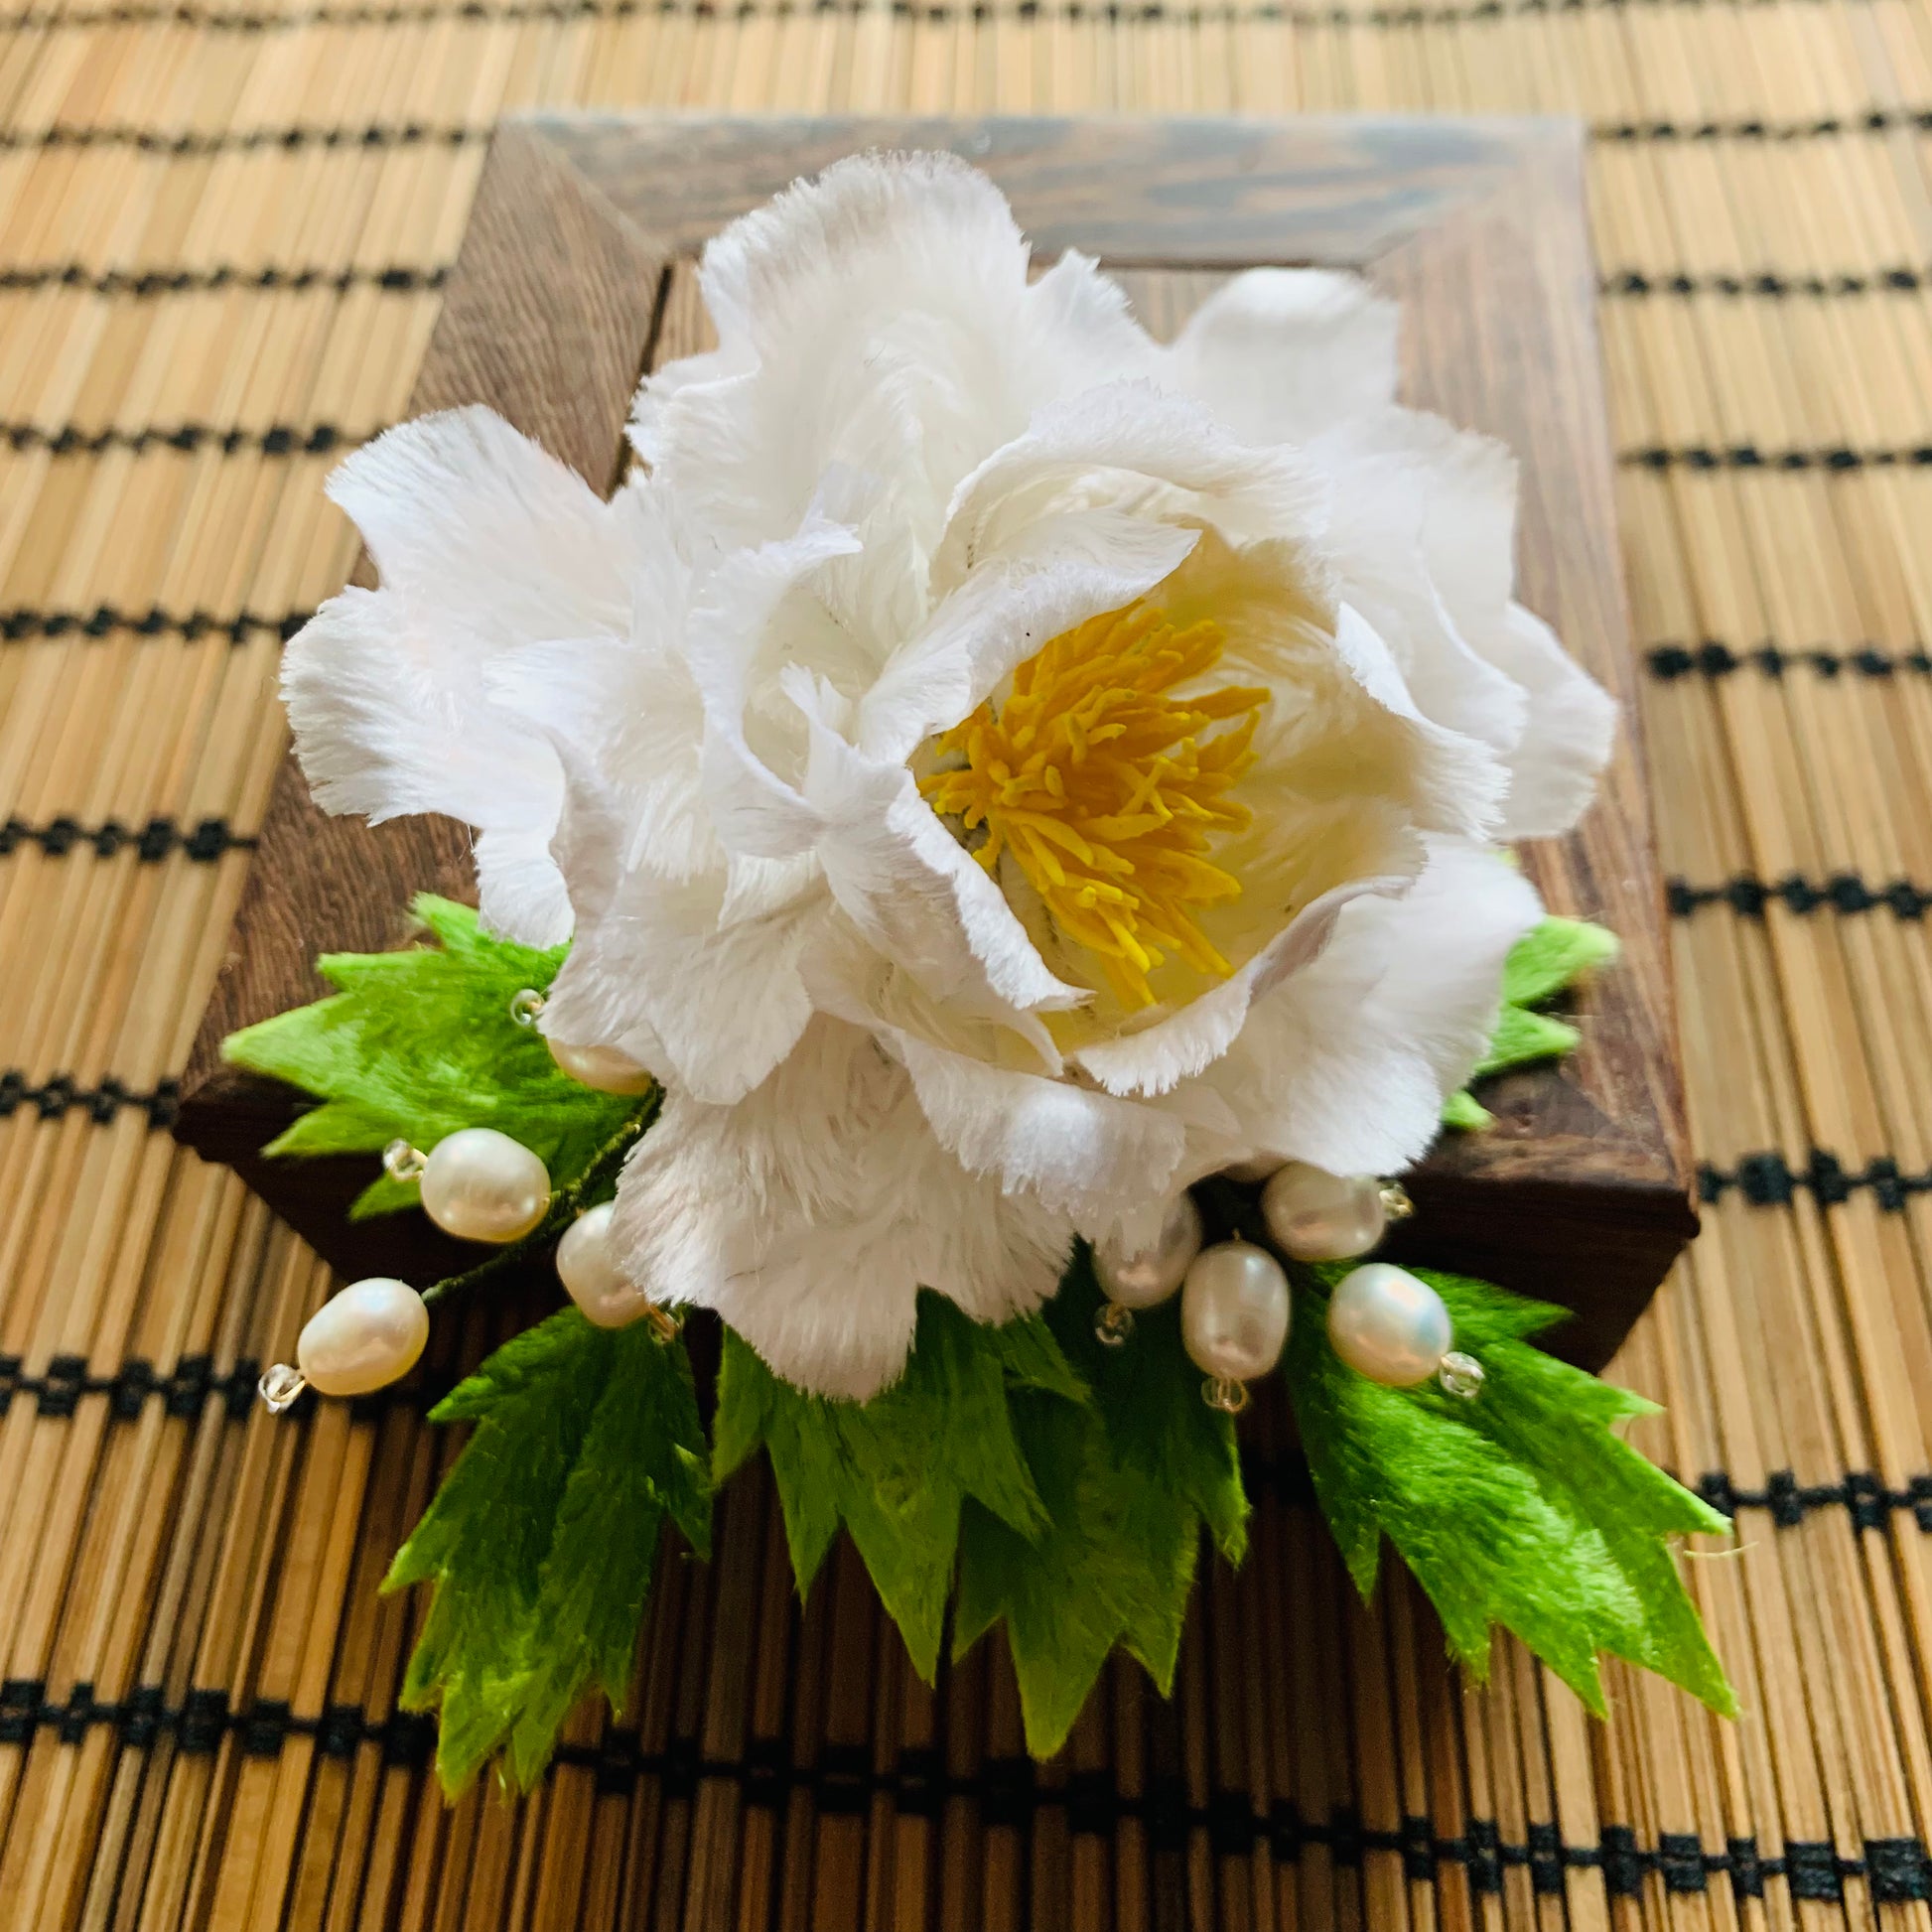 Handmade Velvet Flower White Peony Corsage for your wedding Groom Best Man